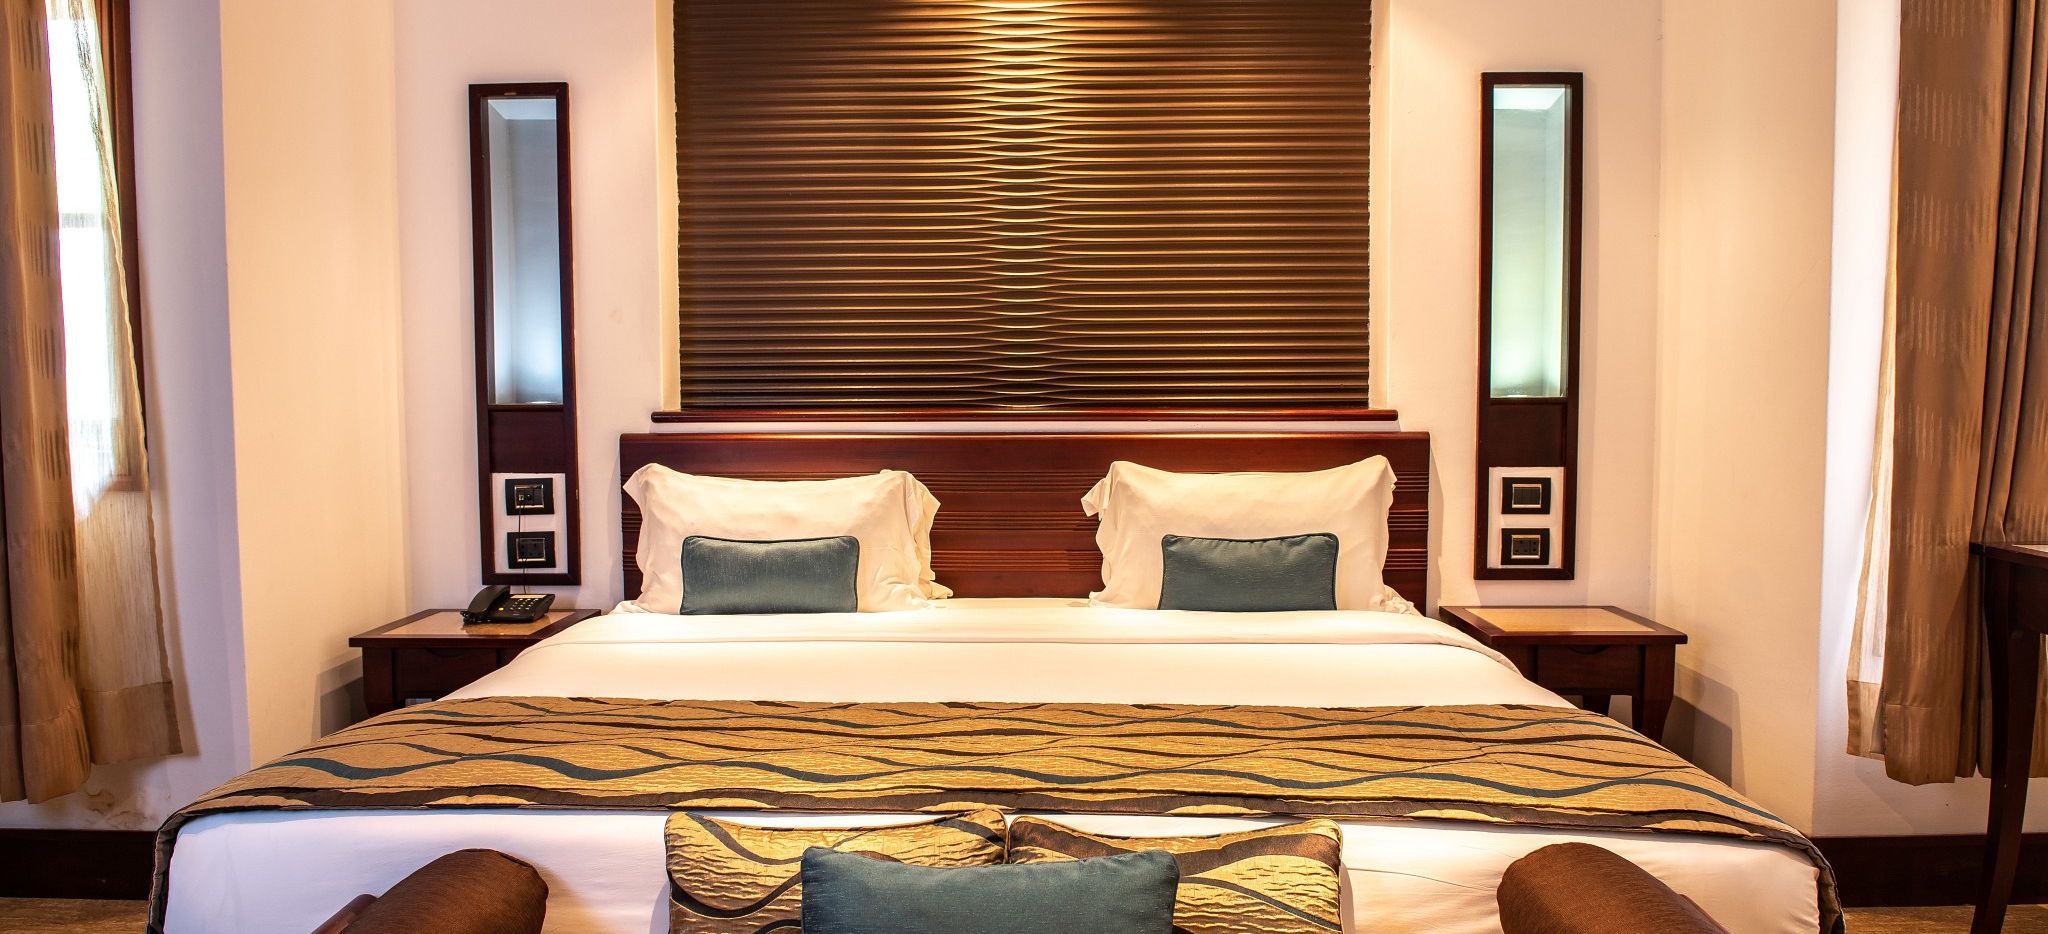 Bett eines Deluxe Rooms im Hotel l'Archipel auf den Seychellen